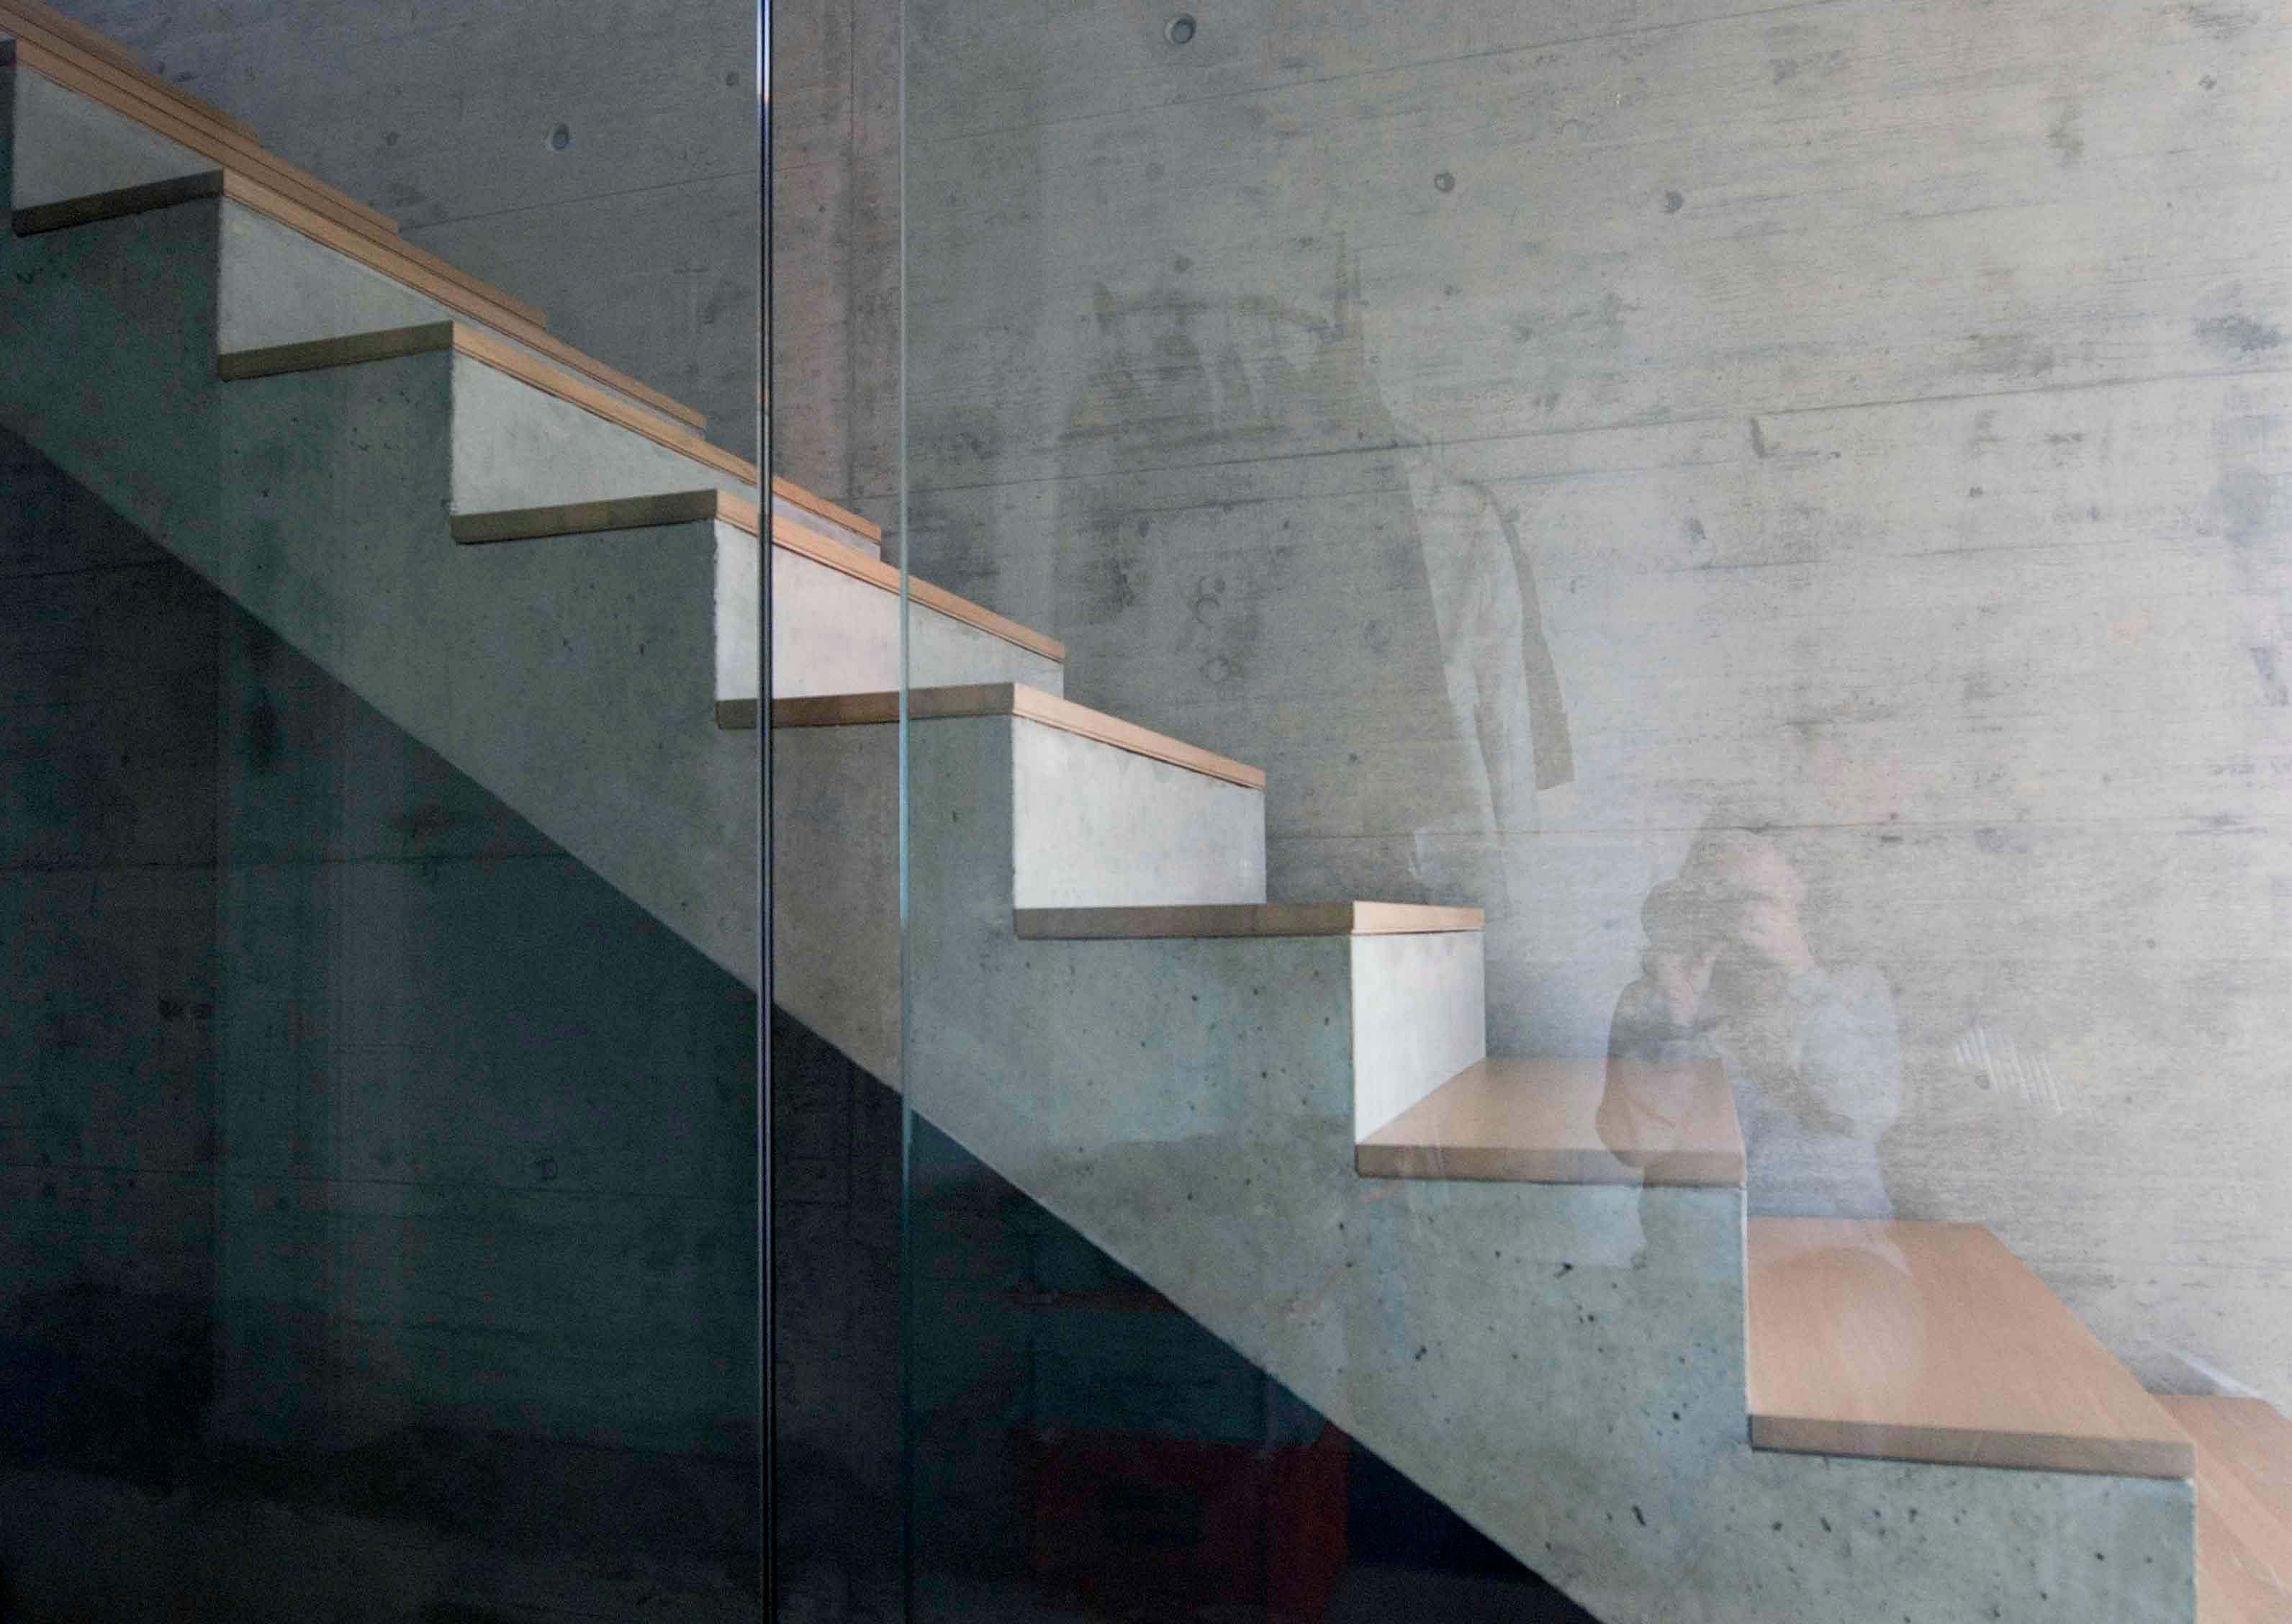  Architektur-Reportage Frick Hanglage: ästhetische Betontreppe mit Glaswand 